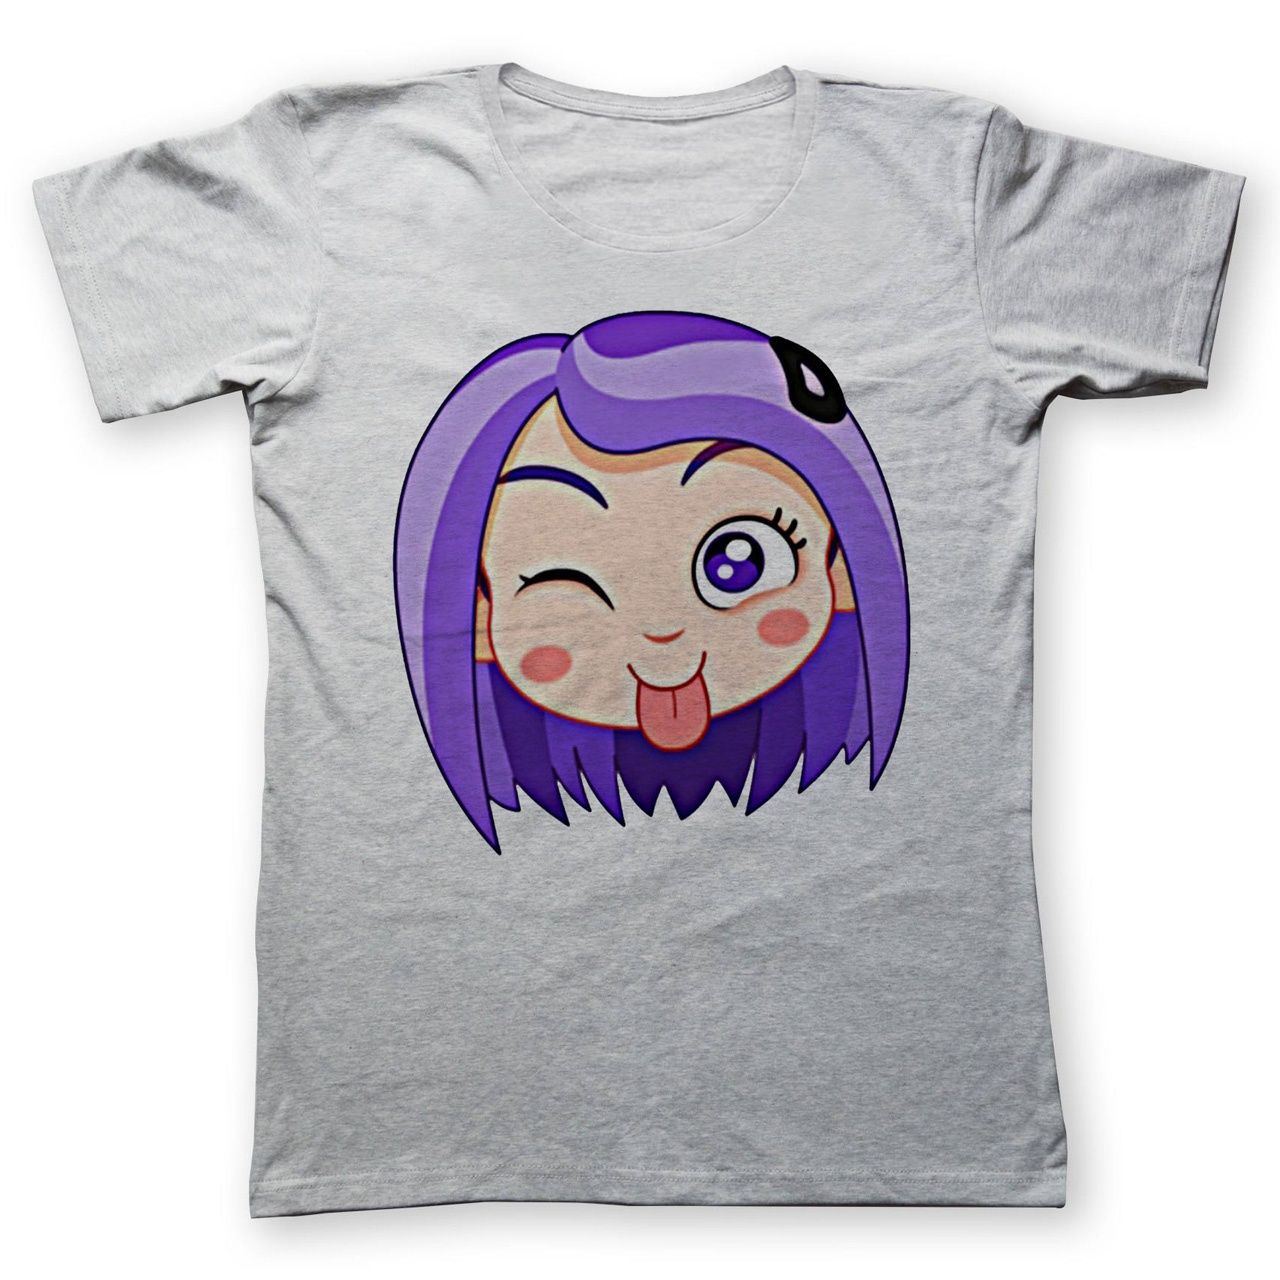 تی شرت به رسم طرح استیکر دختر کد 457 -  - 1